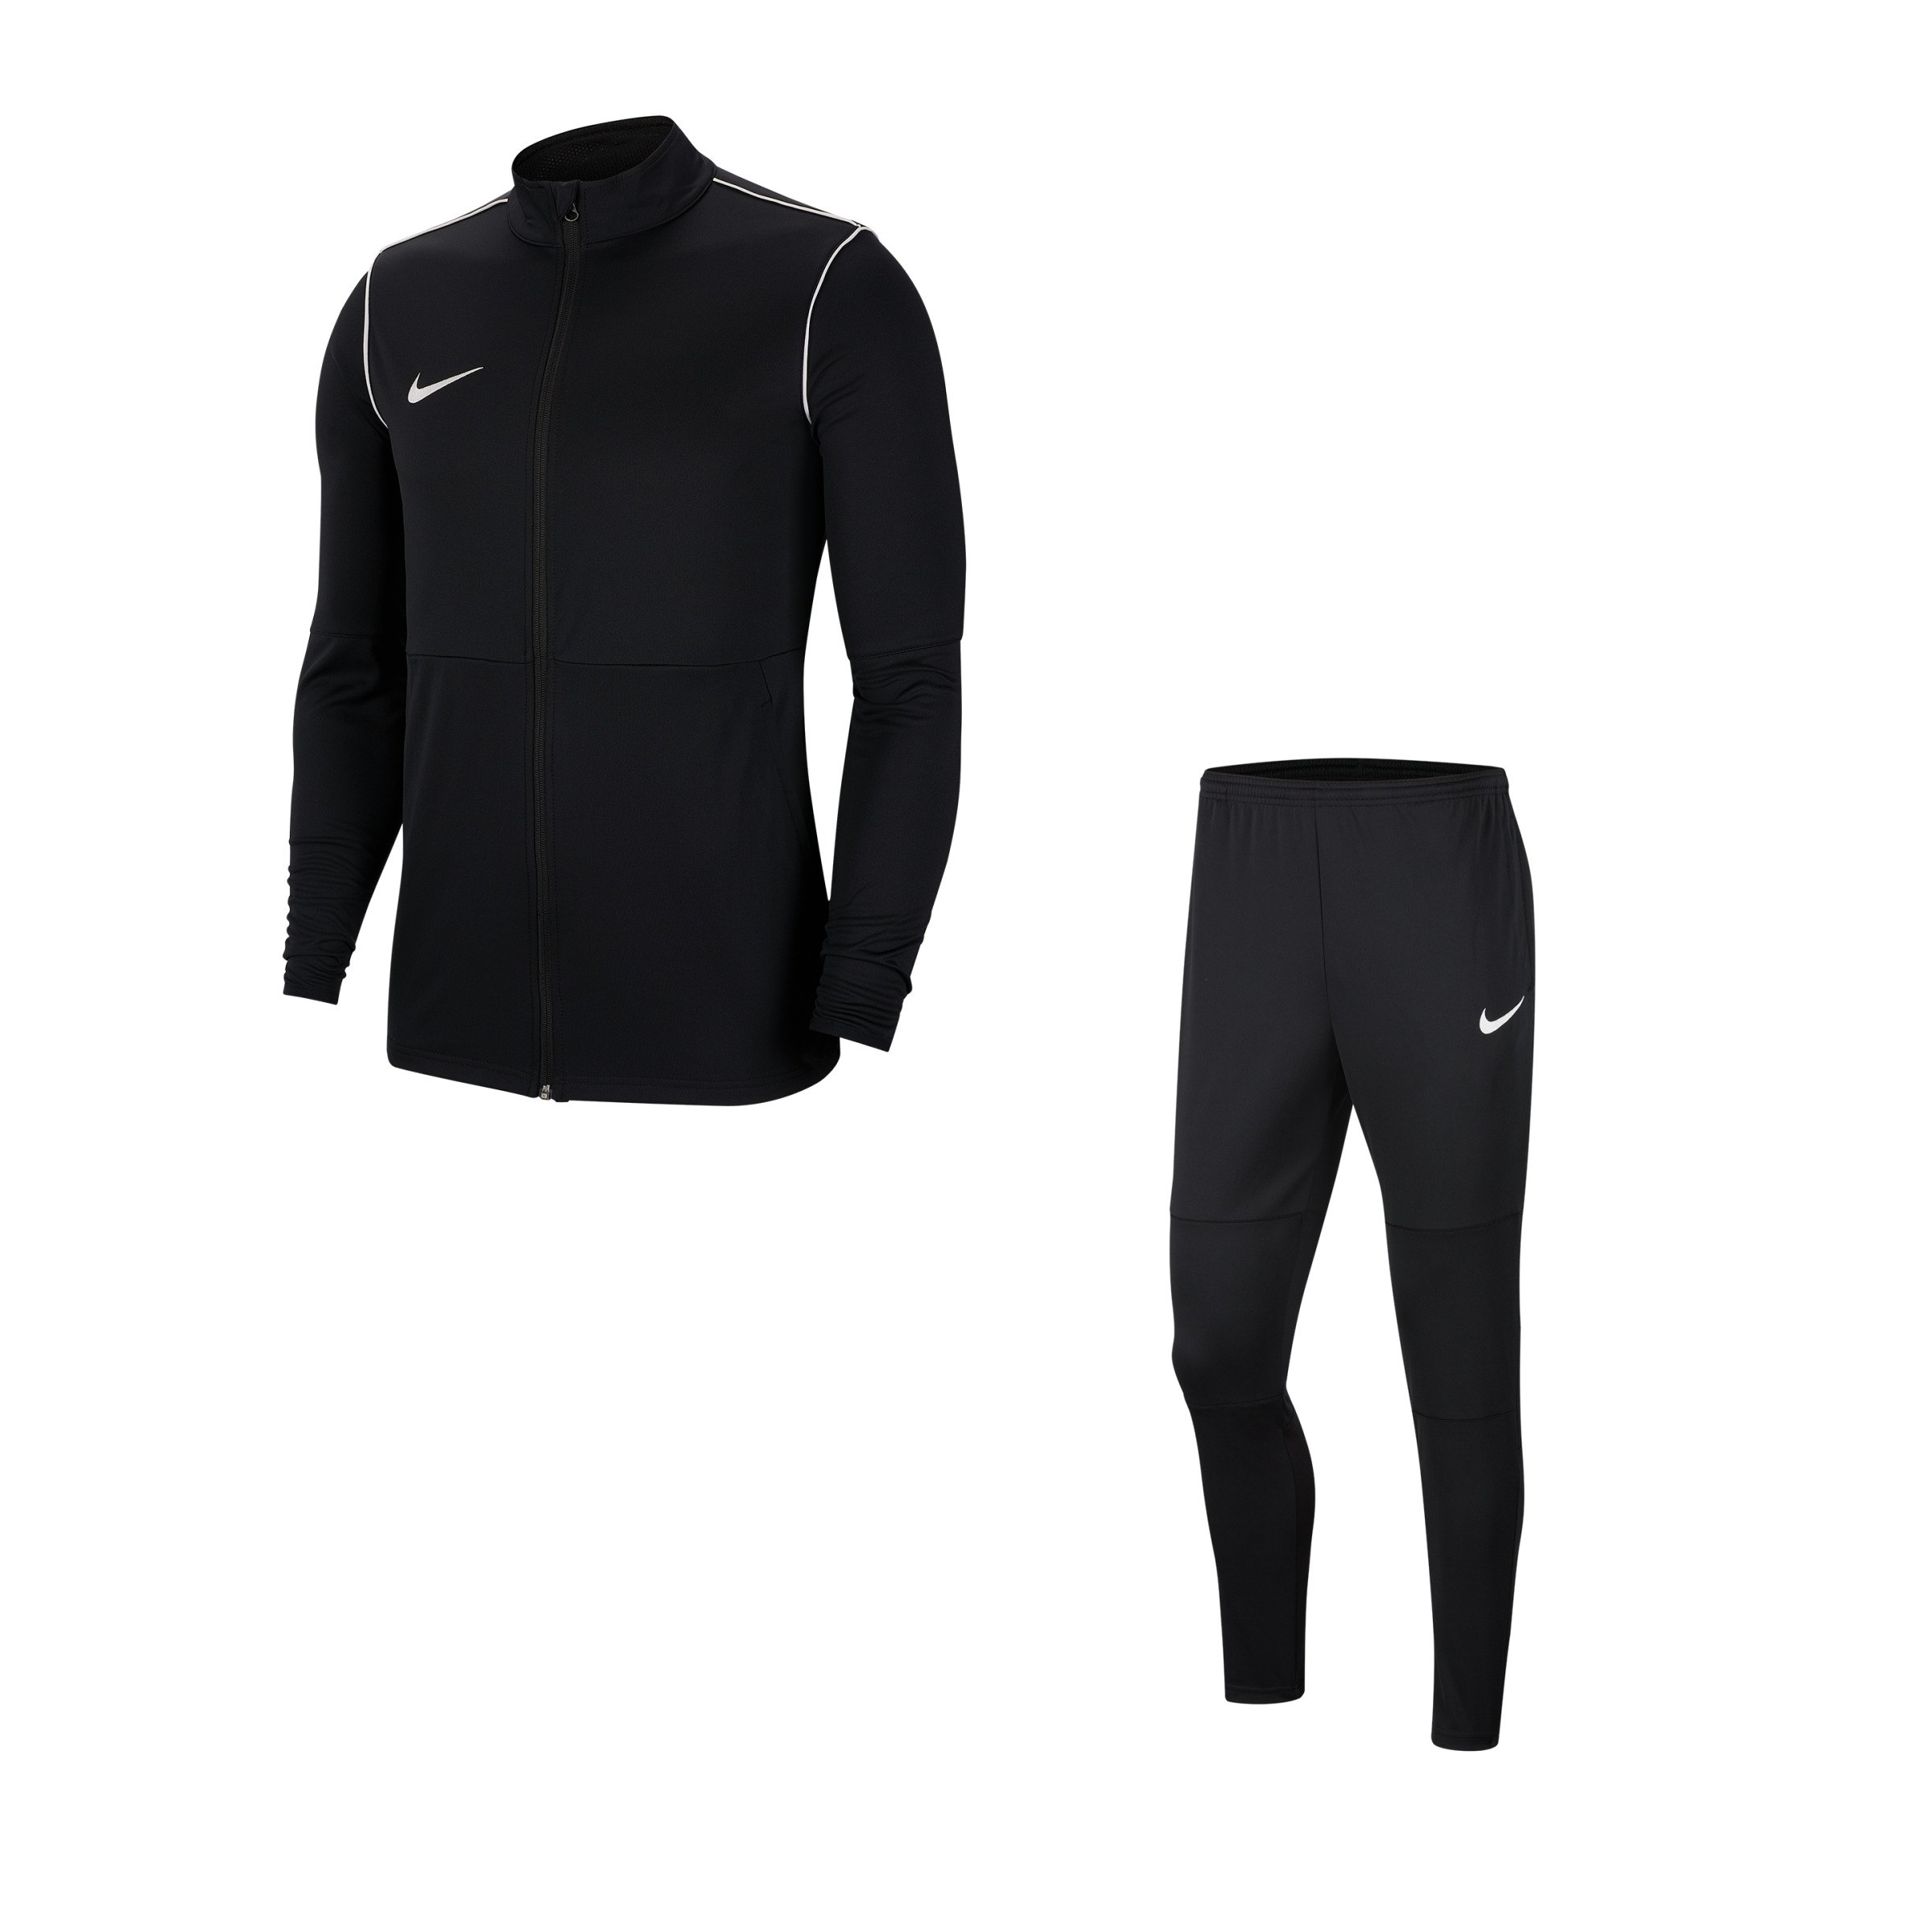 Boek sirene Productie Nike Park 20 Trainingsanzug schwarz